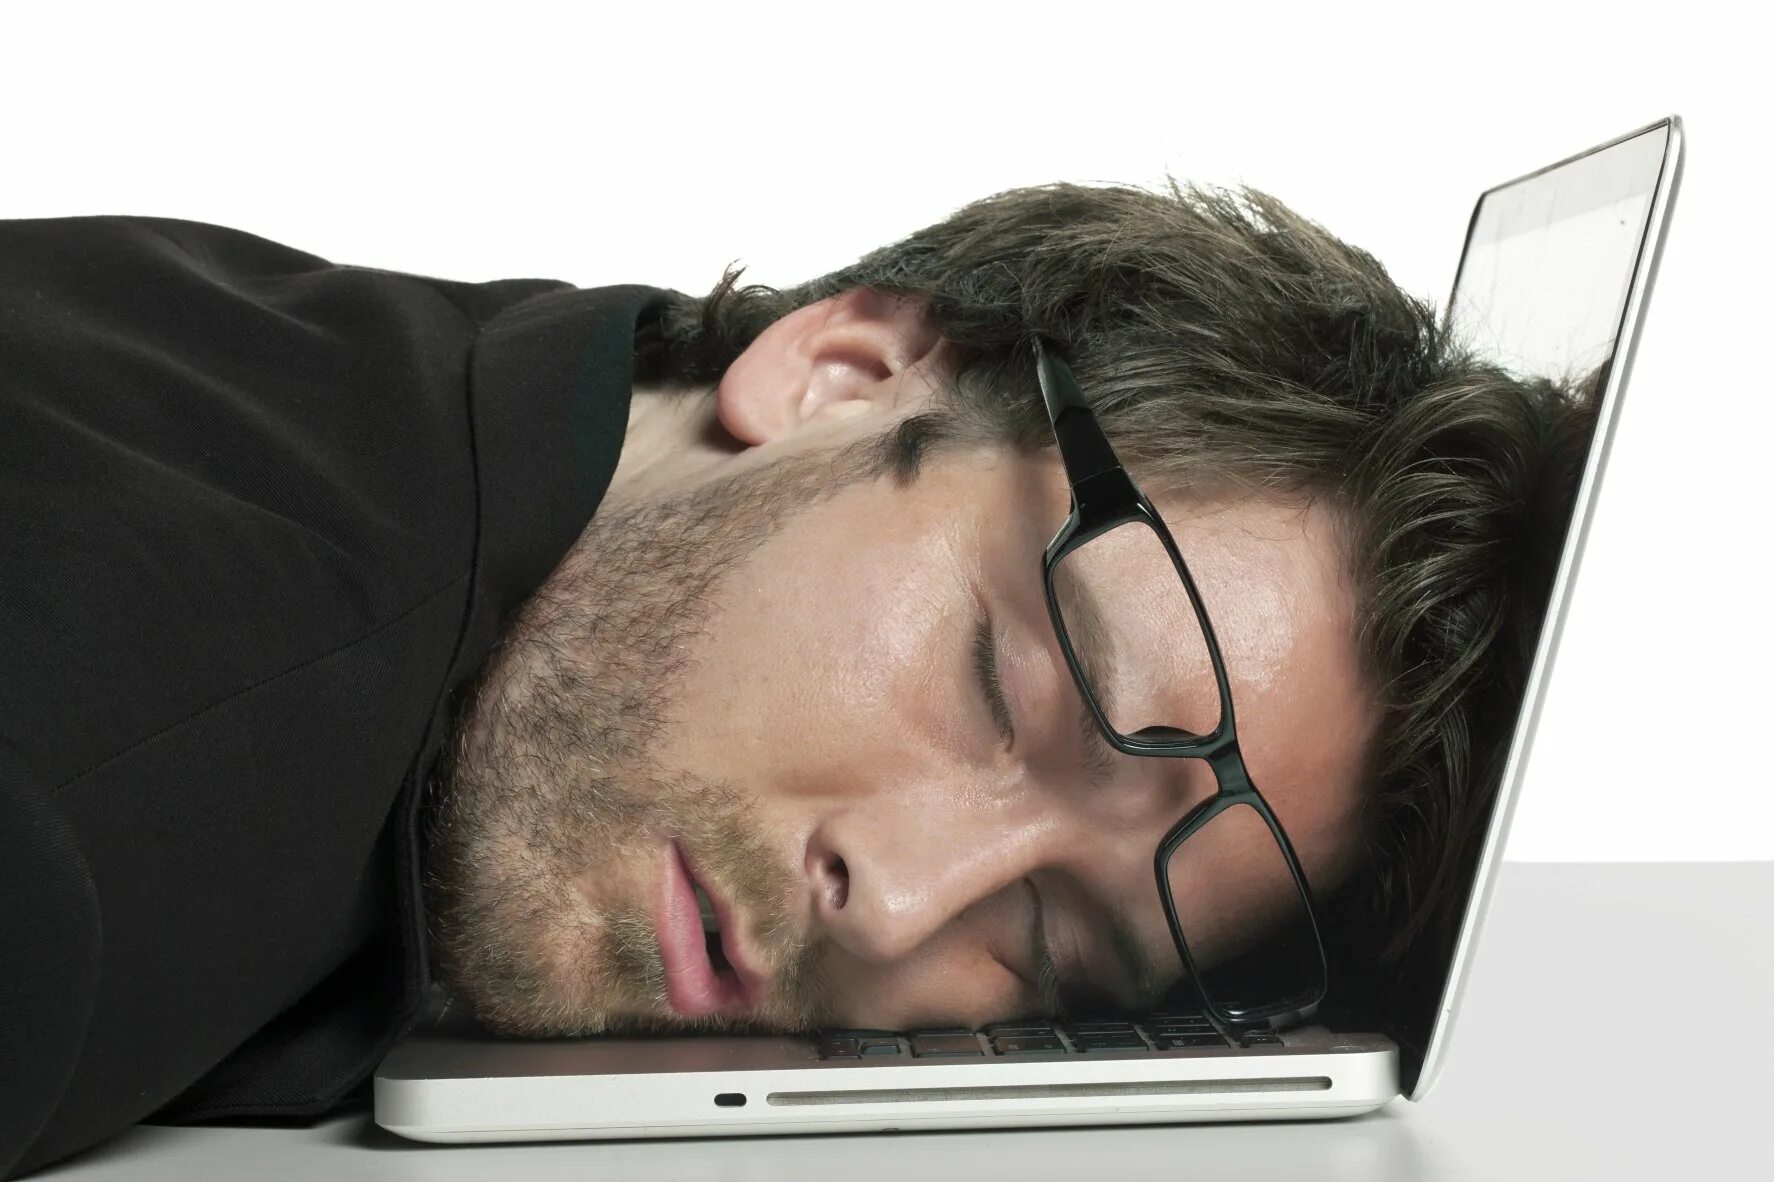 Он казался уставшим. Сонный человек. Спящий человек за компьютером. Человек уснул за компьютером.